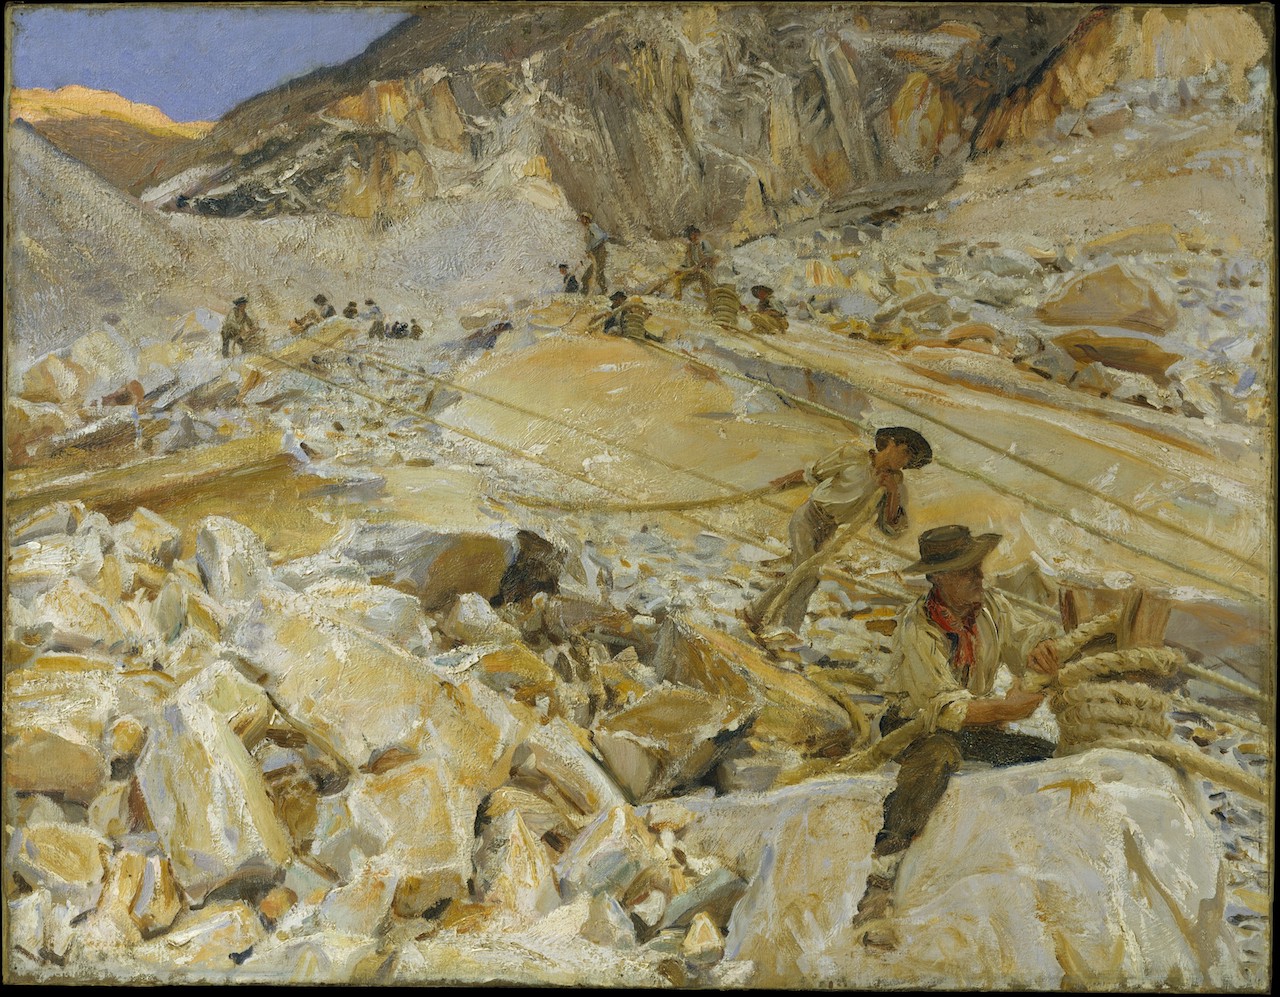 Artiste peintre : John Singer Sargent - Année 1911.